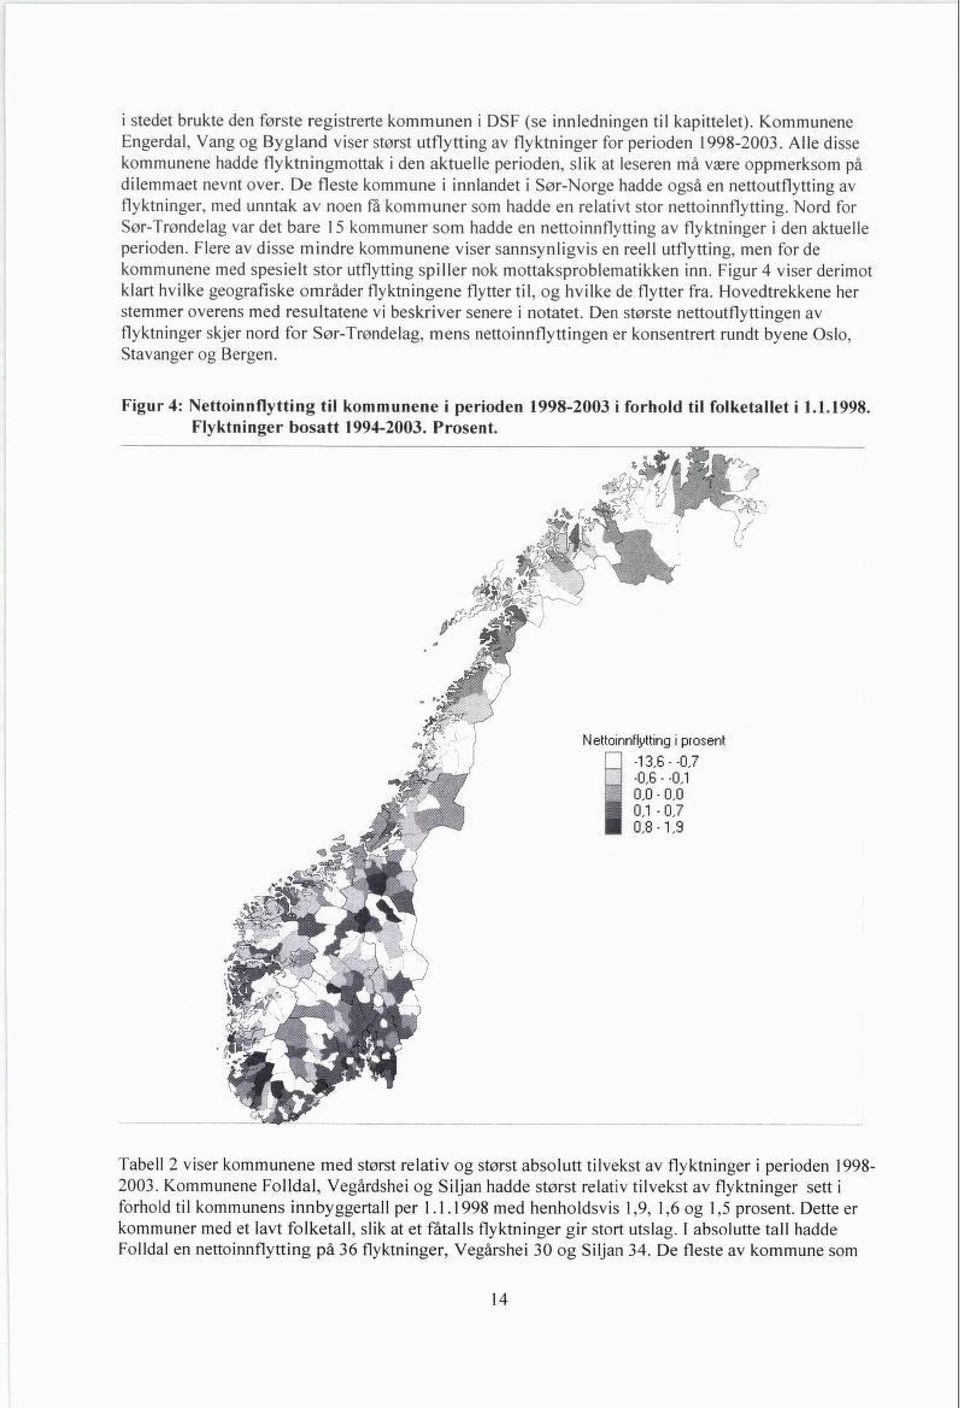 De fleste kommune i innlandet i Sør-Norge hadde også en nettoutflytting av flyktninger, med unntak av noen få kommuner som hadde en relativt stor nettoinnflytting.